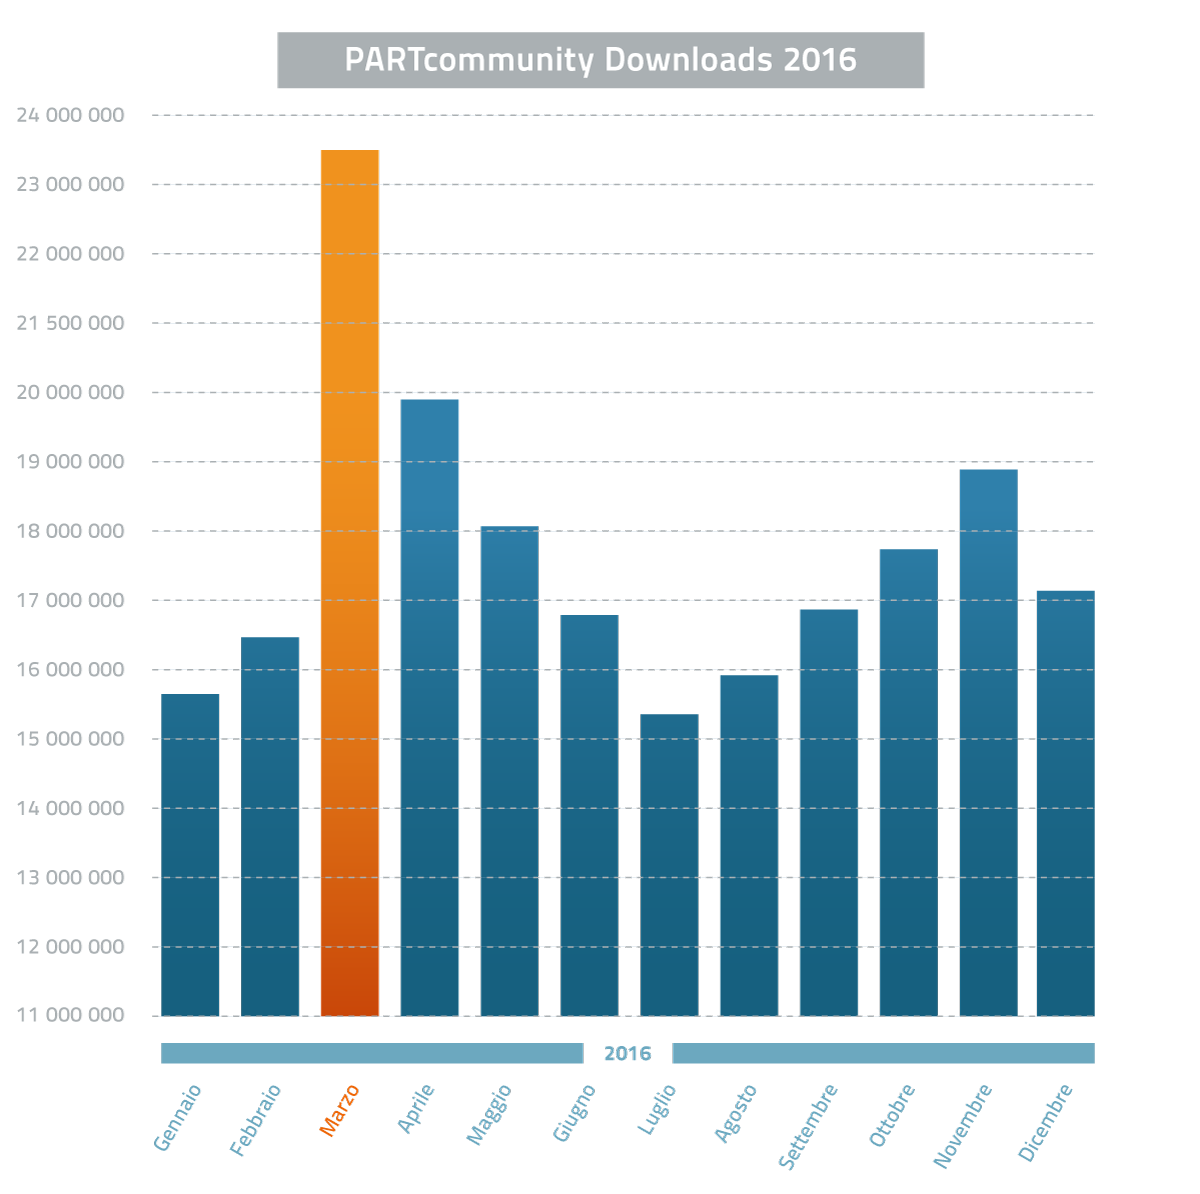 CADENAS mette a segno un nuovo record di download con un aumento di download del 42 % rispetto al precedente anno 2015